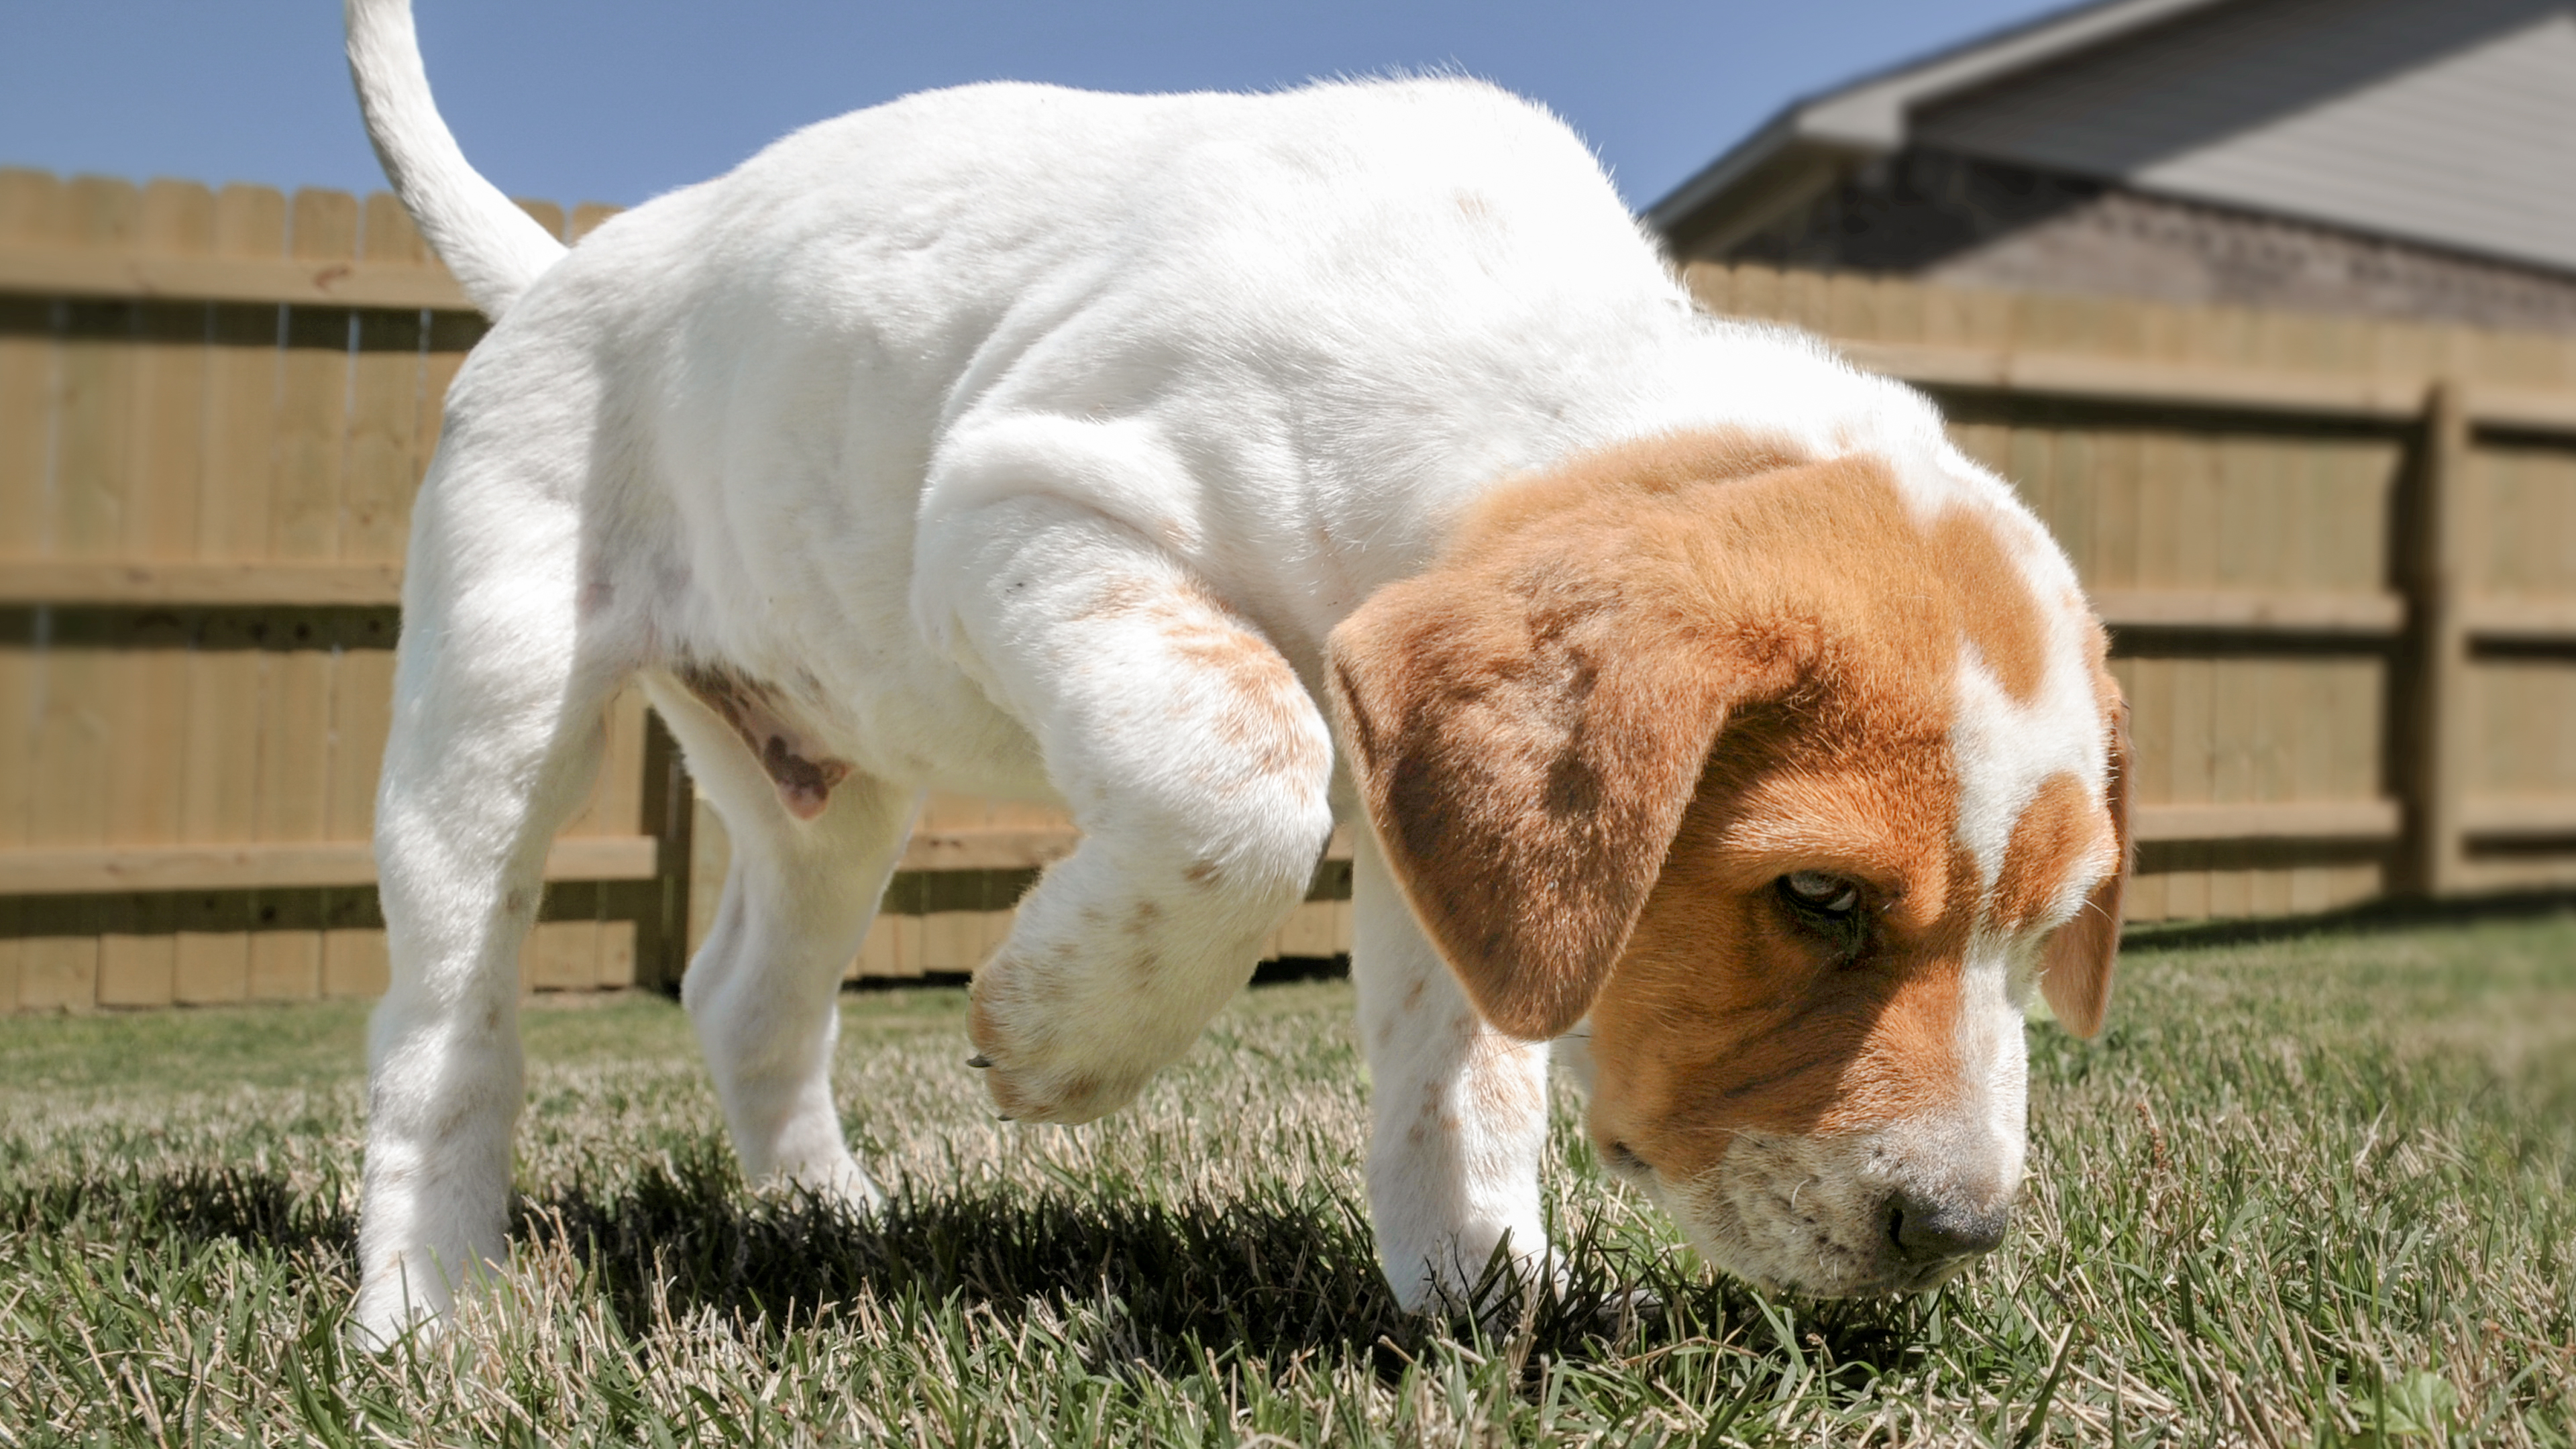 Puppy in a garden sniffing the ground